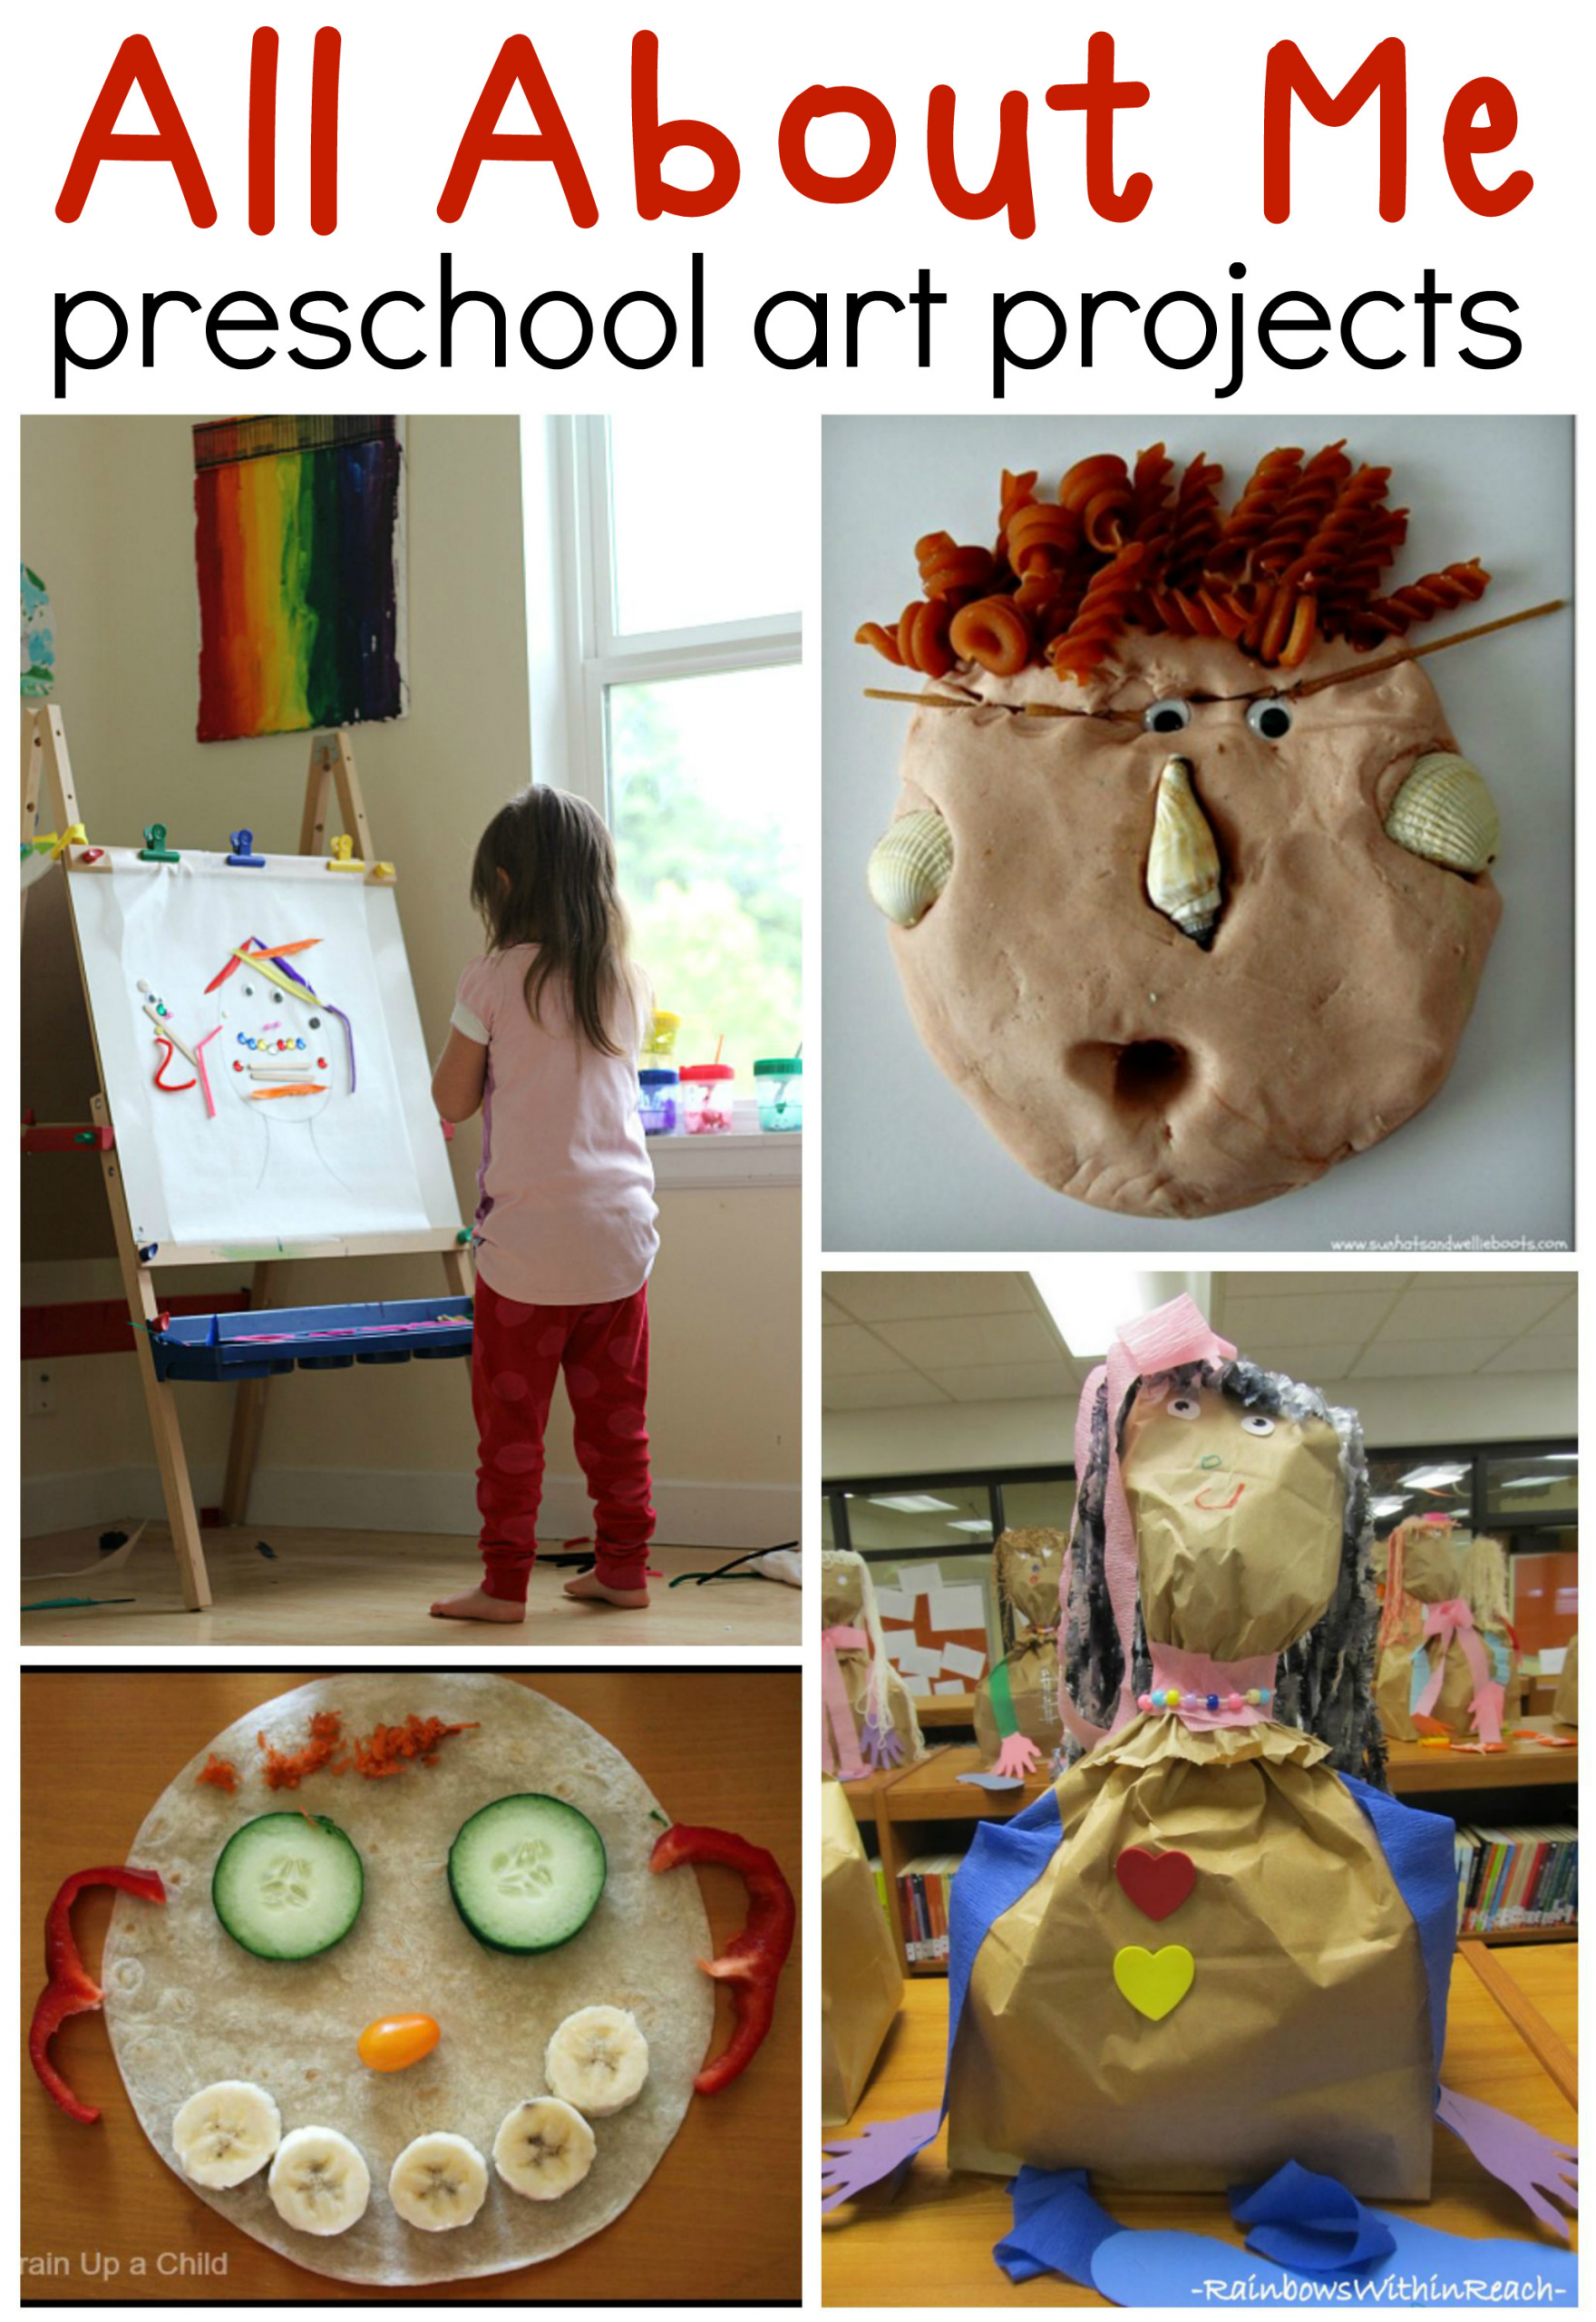 Preschool Art Projects Ideas
 All about me preschool art ideas The Measured Mom